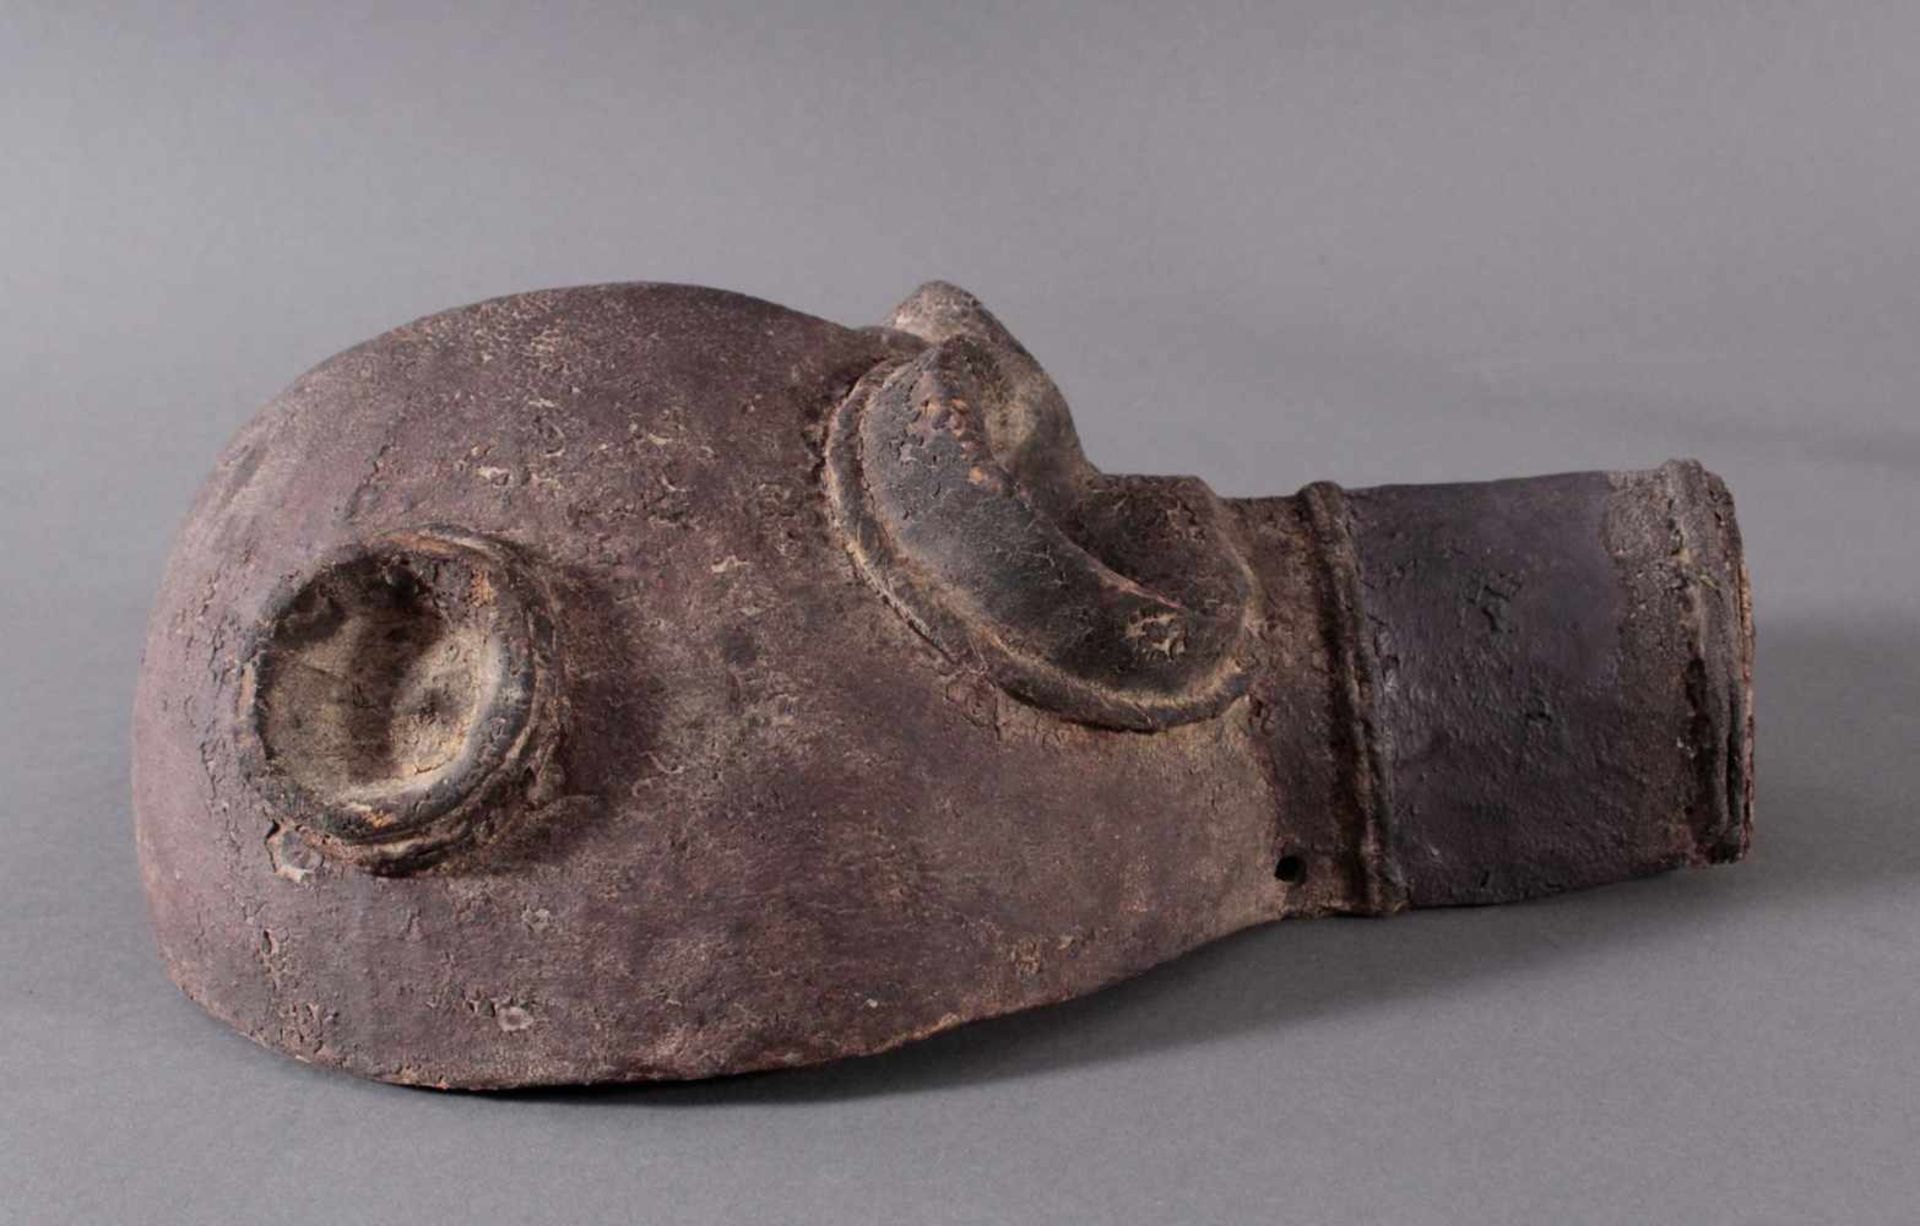 Antike Große Zoomorphe Maske. SeltenAus dem Vollholz geschnitzt, dunkle Patina darüber schwarze - Bild 2 aus 7